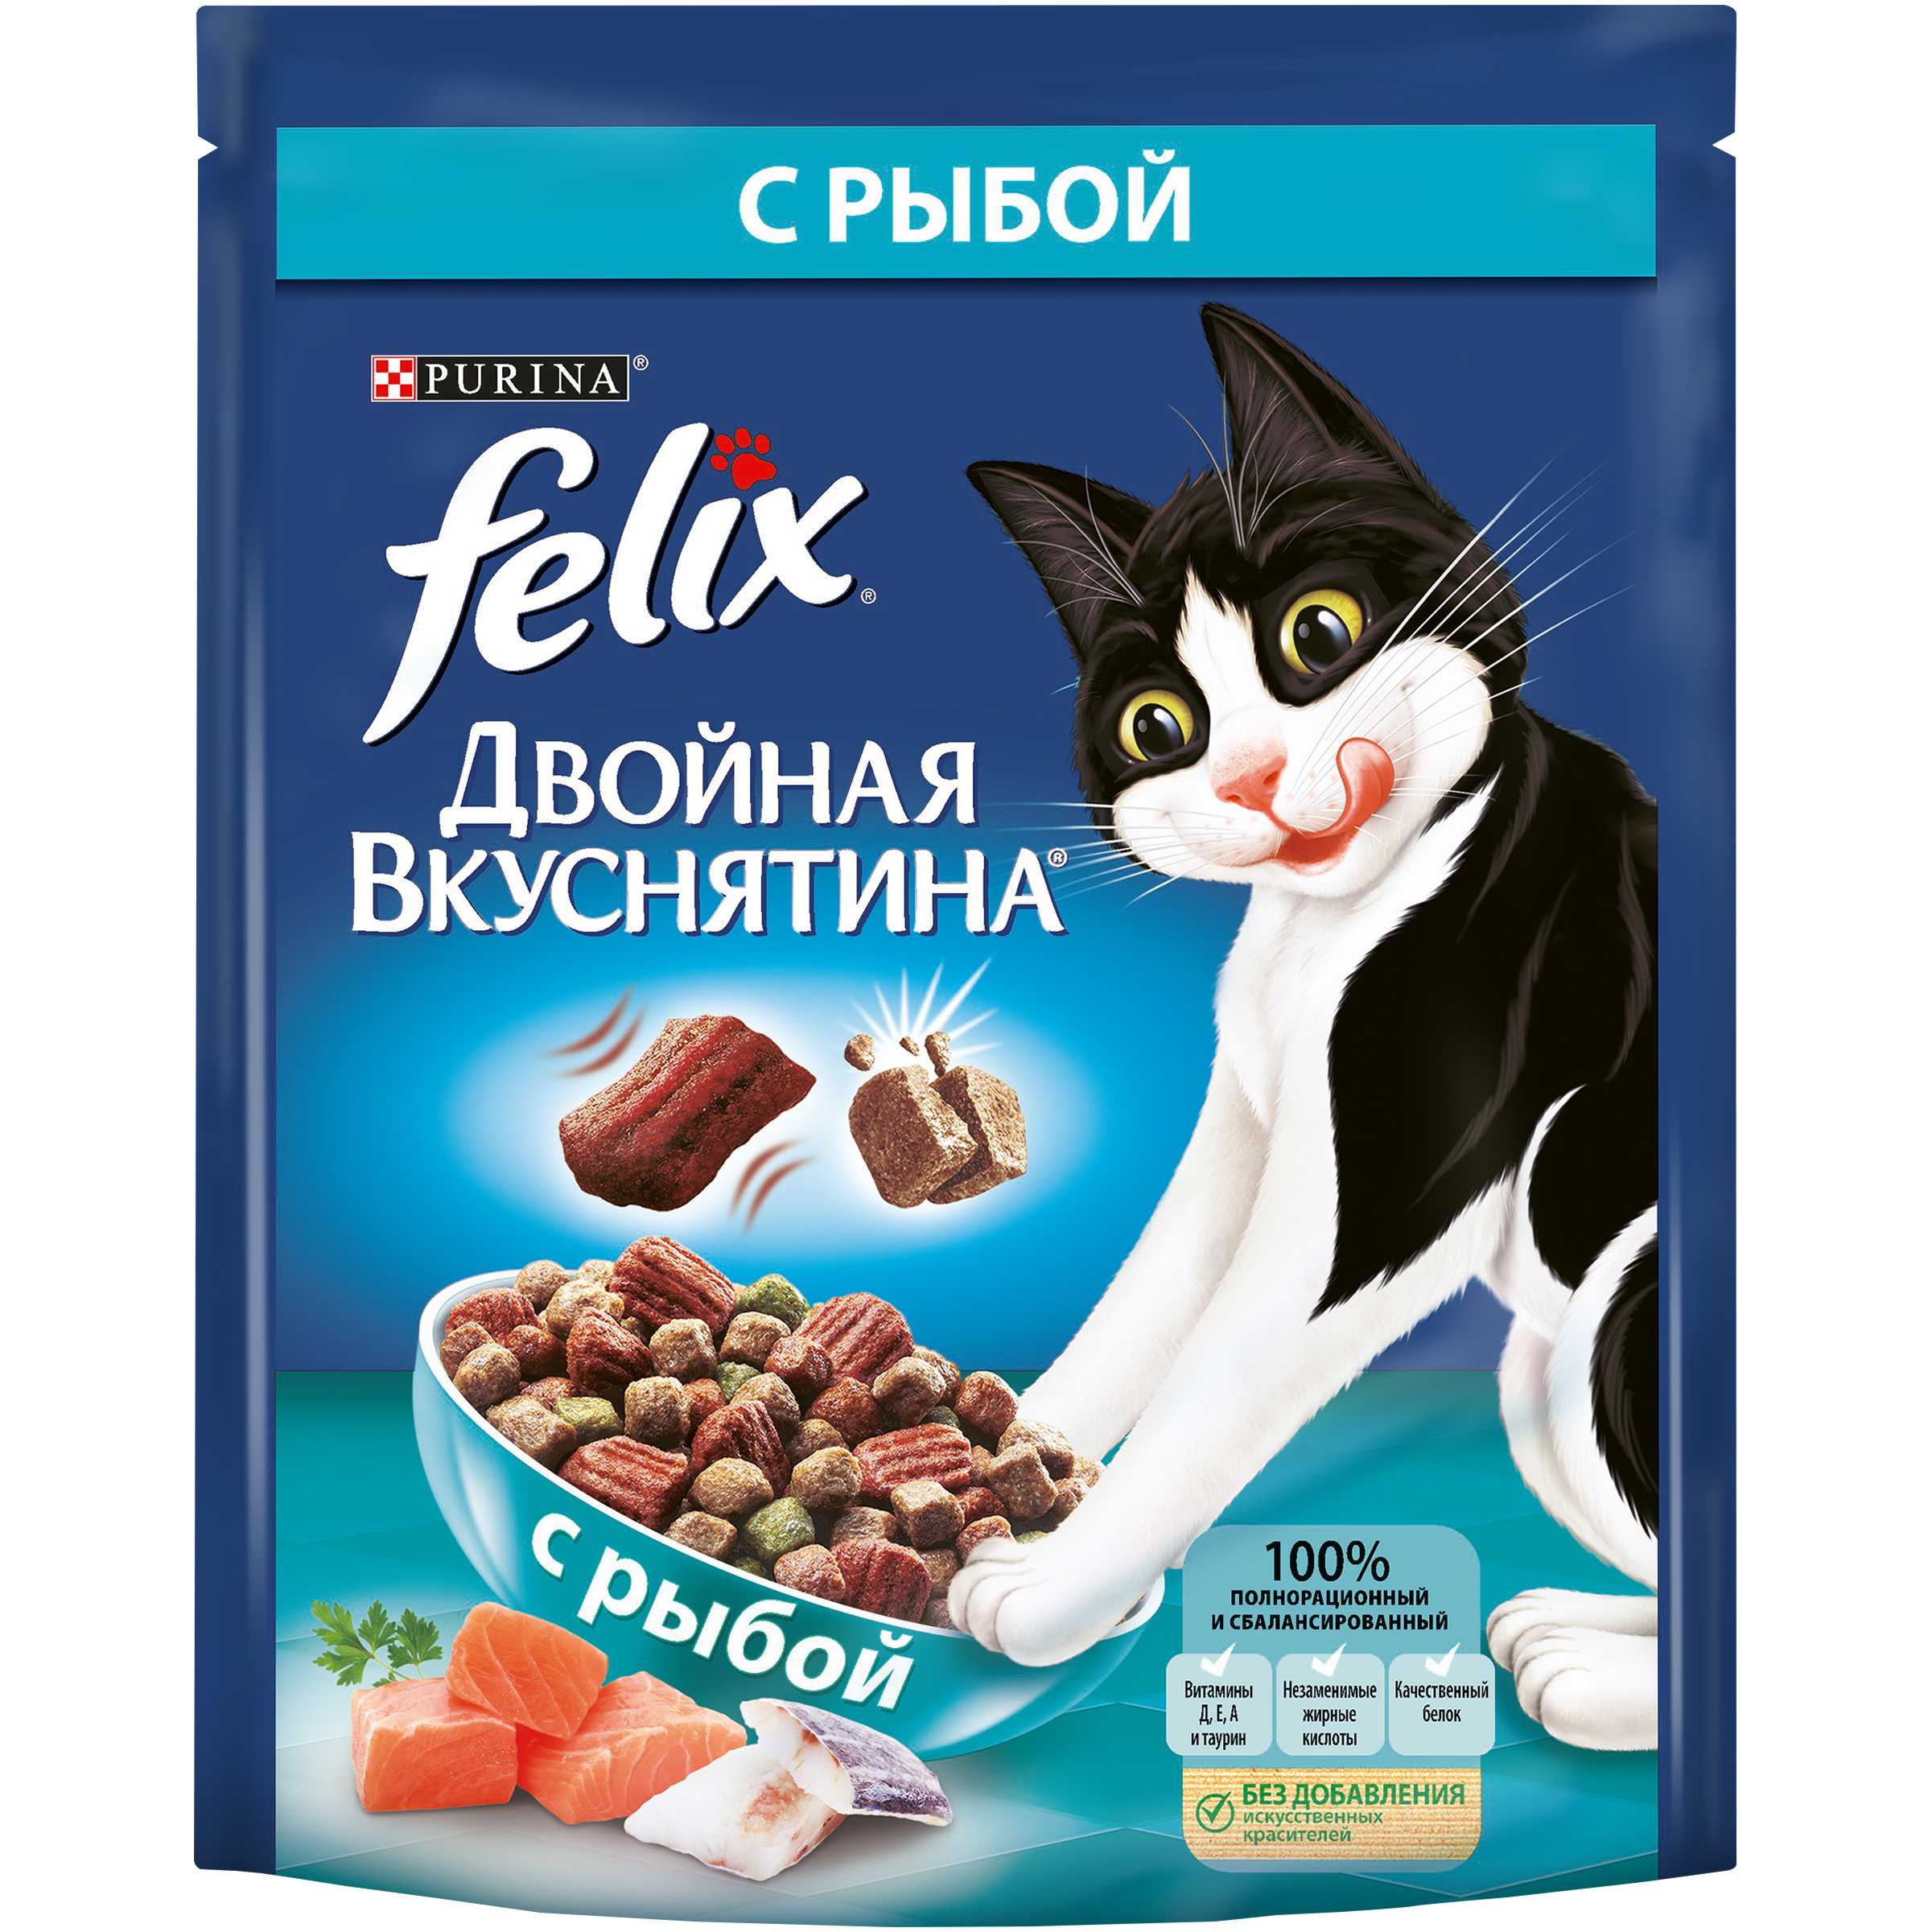 Orijen корм для кошек: 5 популярных видов, отзывы